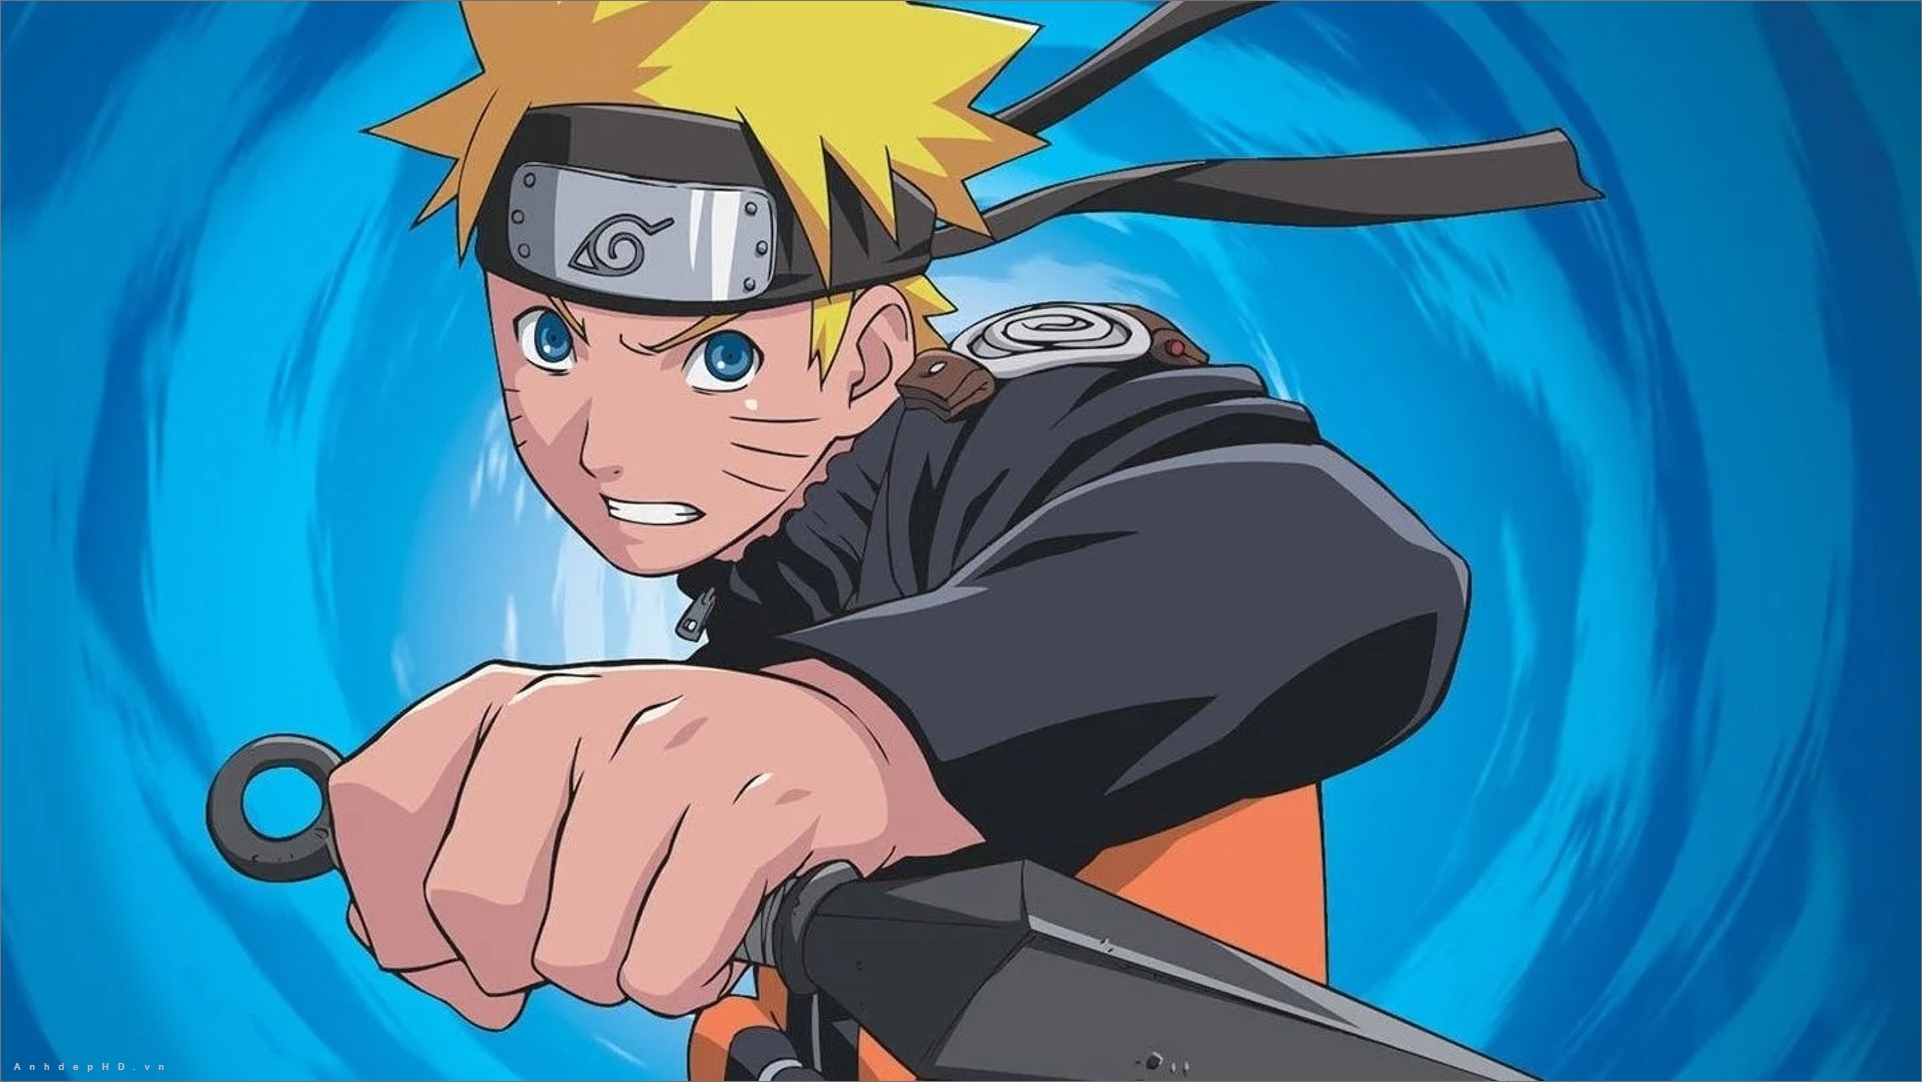 [Hướng dẫn] Hình Nền Naruto Đẹp Ngầu, Chất Ngất Trong Thế Giới Anime